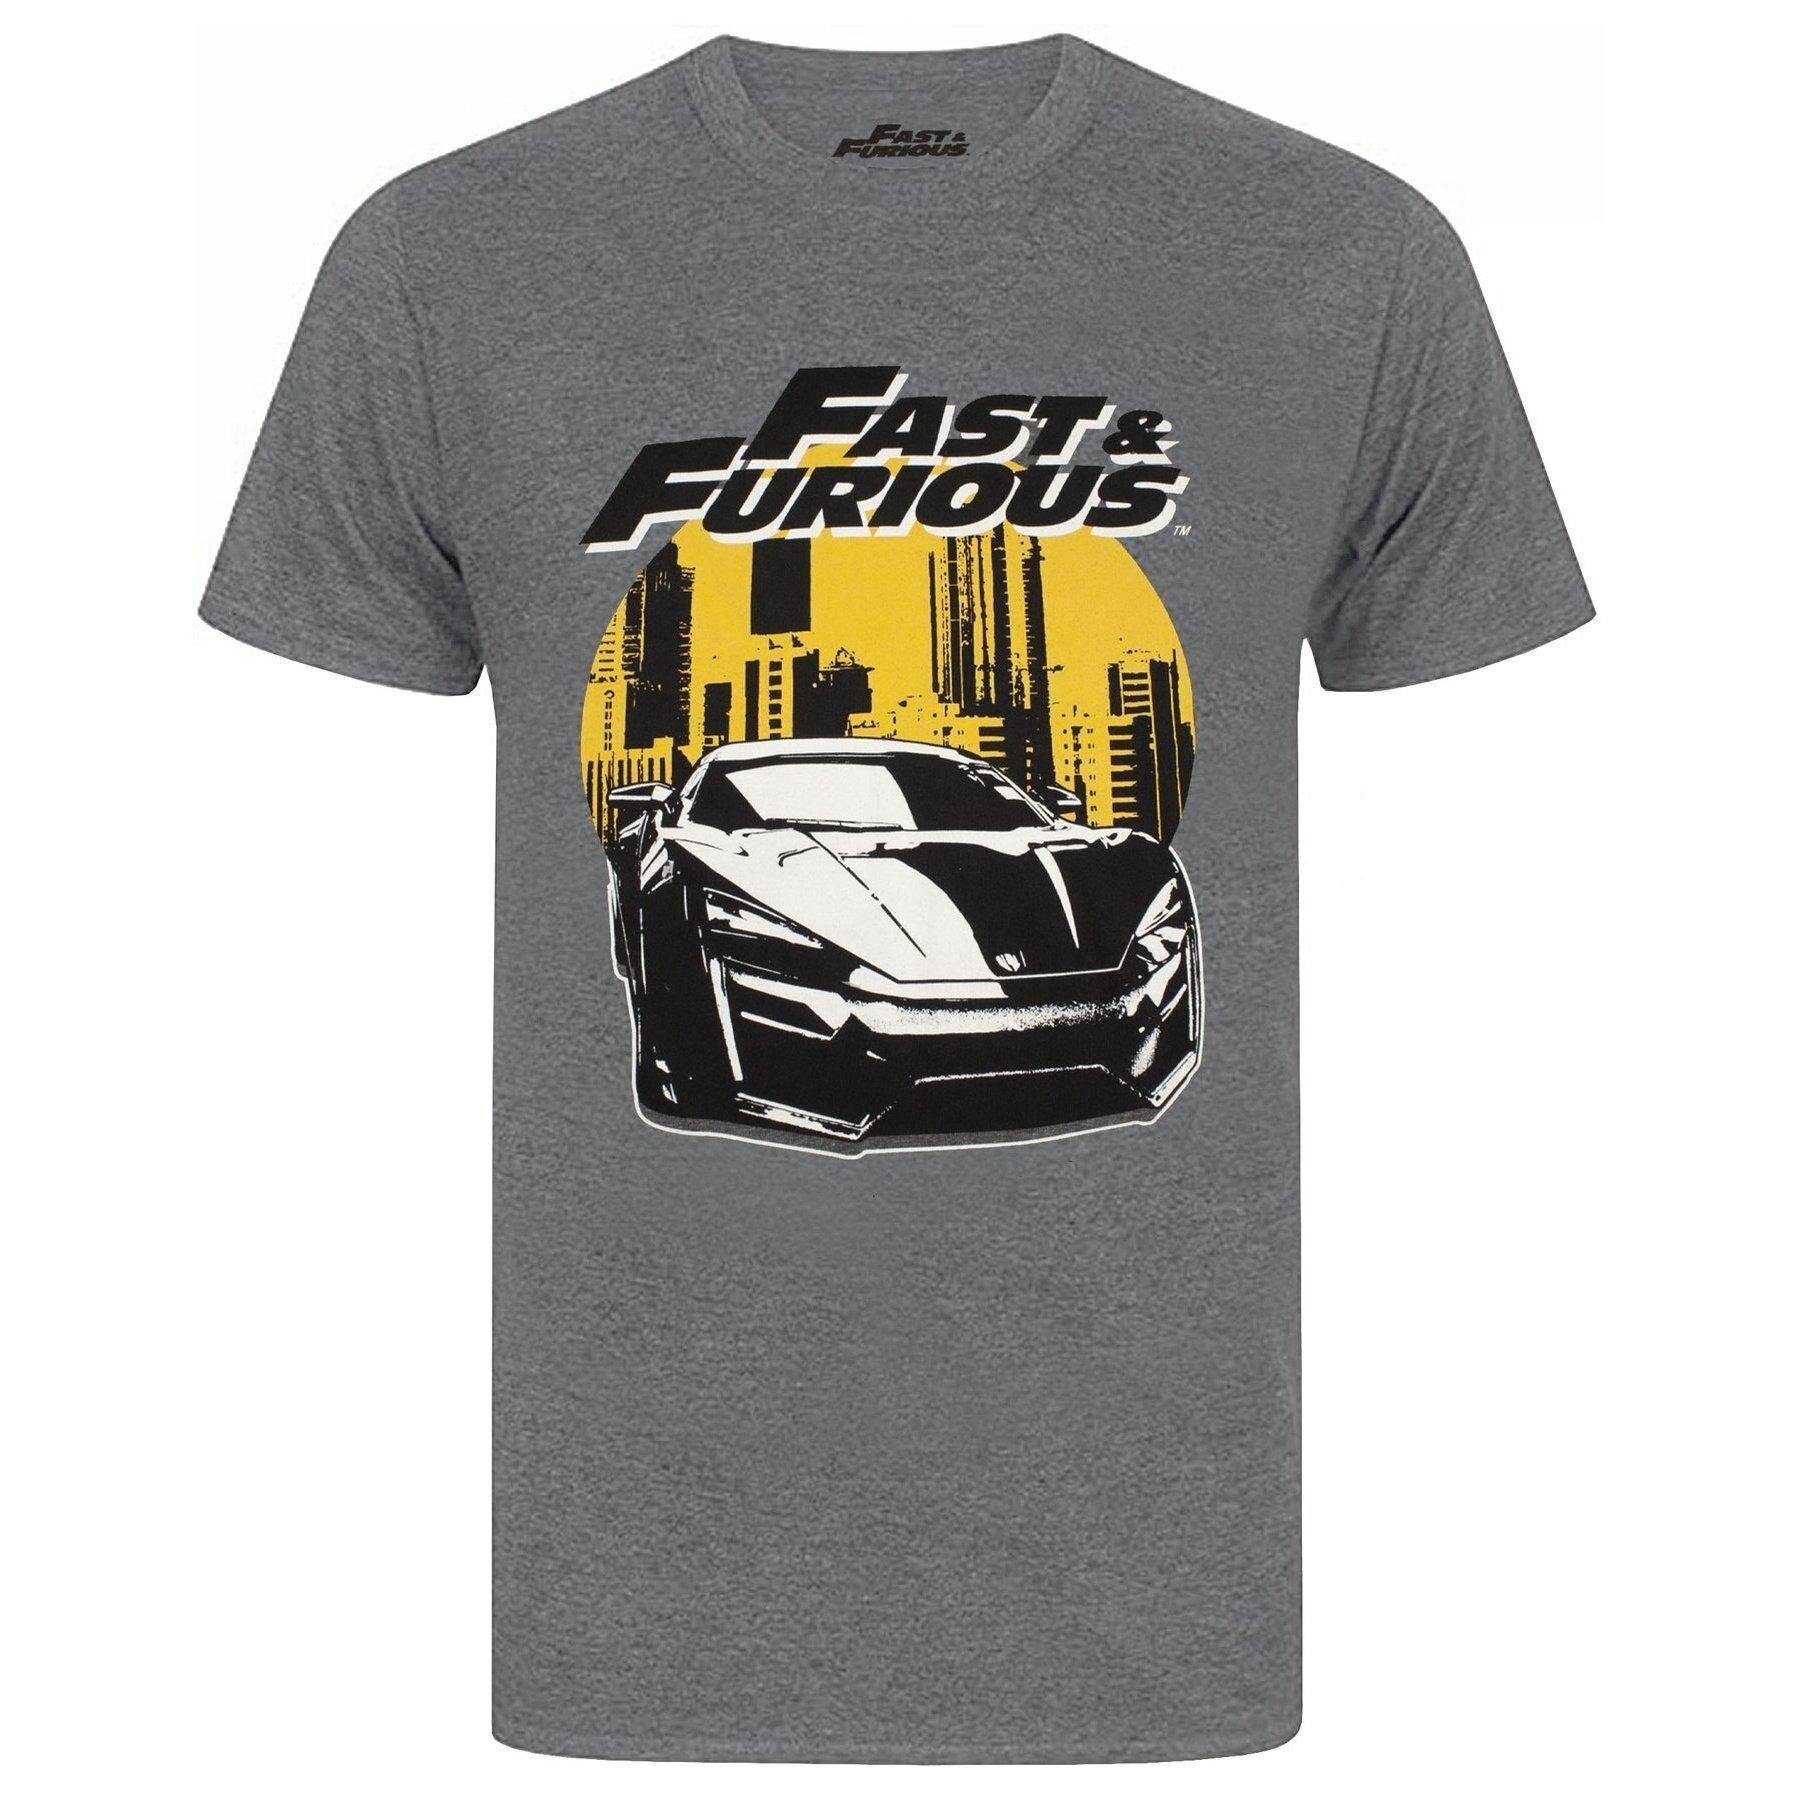 Tshirt Herren Charcoal Black XXL von Fast & Furious